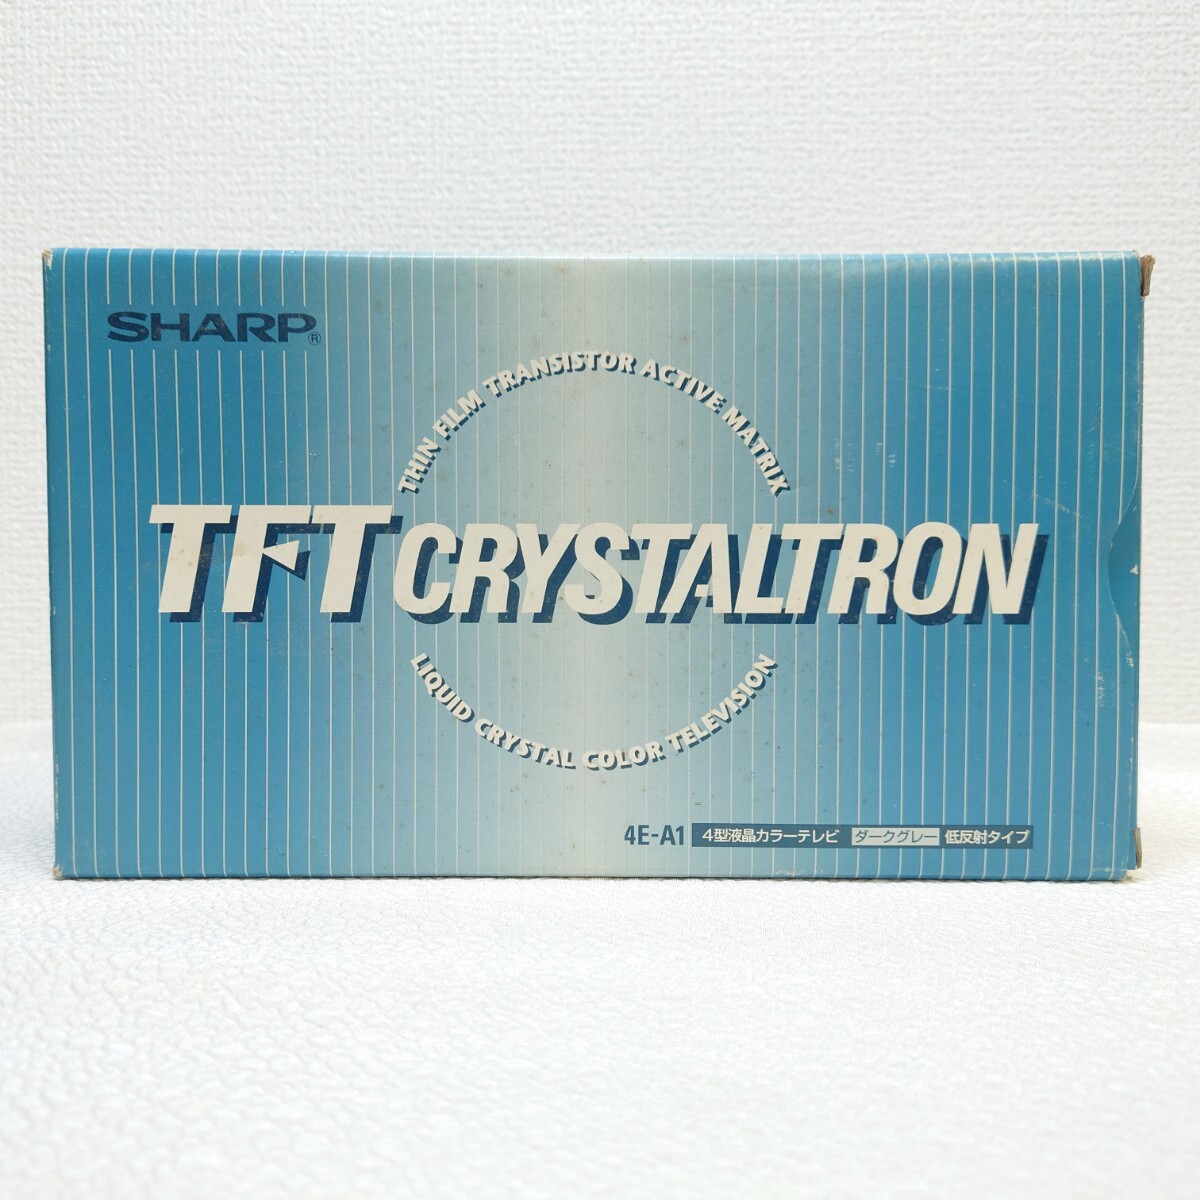 SHARP TFT CRYSTALTRON 4E-A1 4型 液晶カラーテレビ 低反射タイプ 当時物 94年製 カーテレビ シャープ _画像1